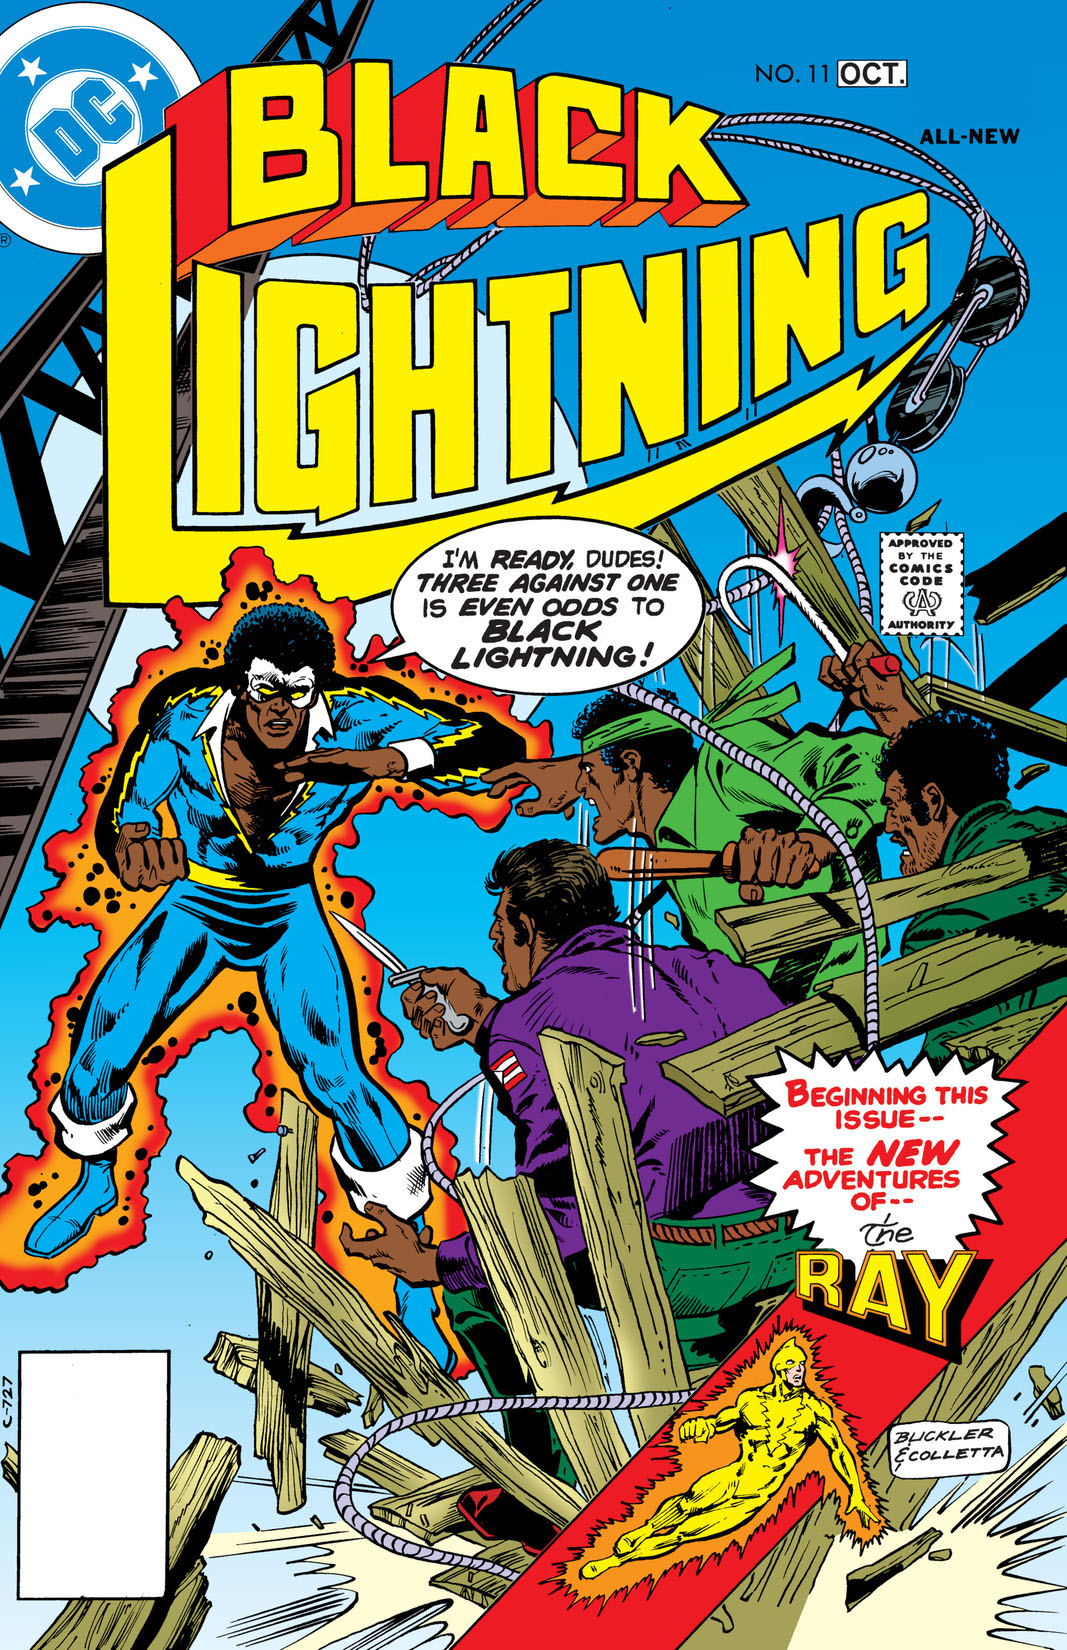 Black Lightning (1977-) #11 preview images